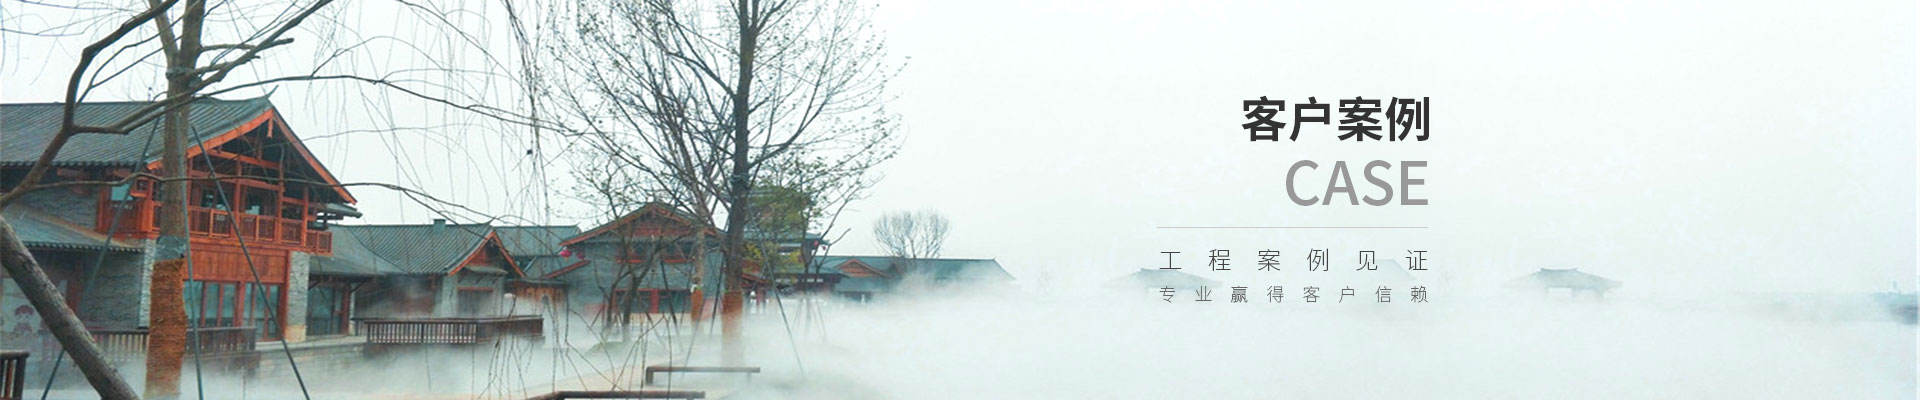 彭山同庆南风煤堆场喷雾除尘